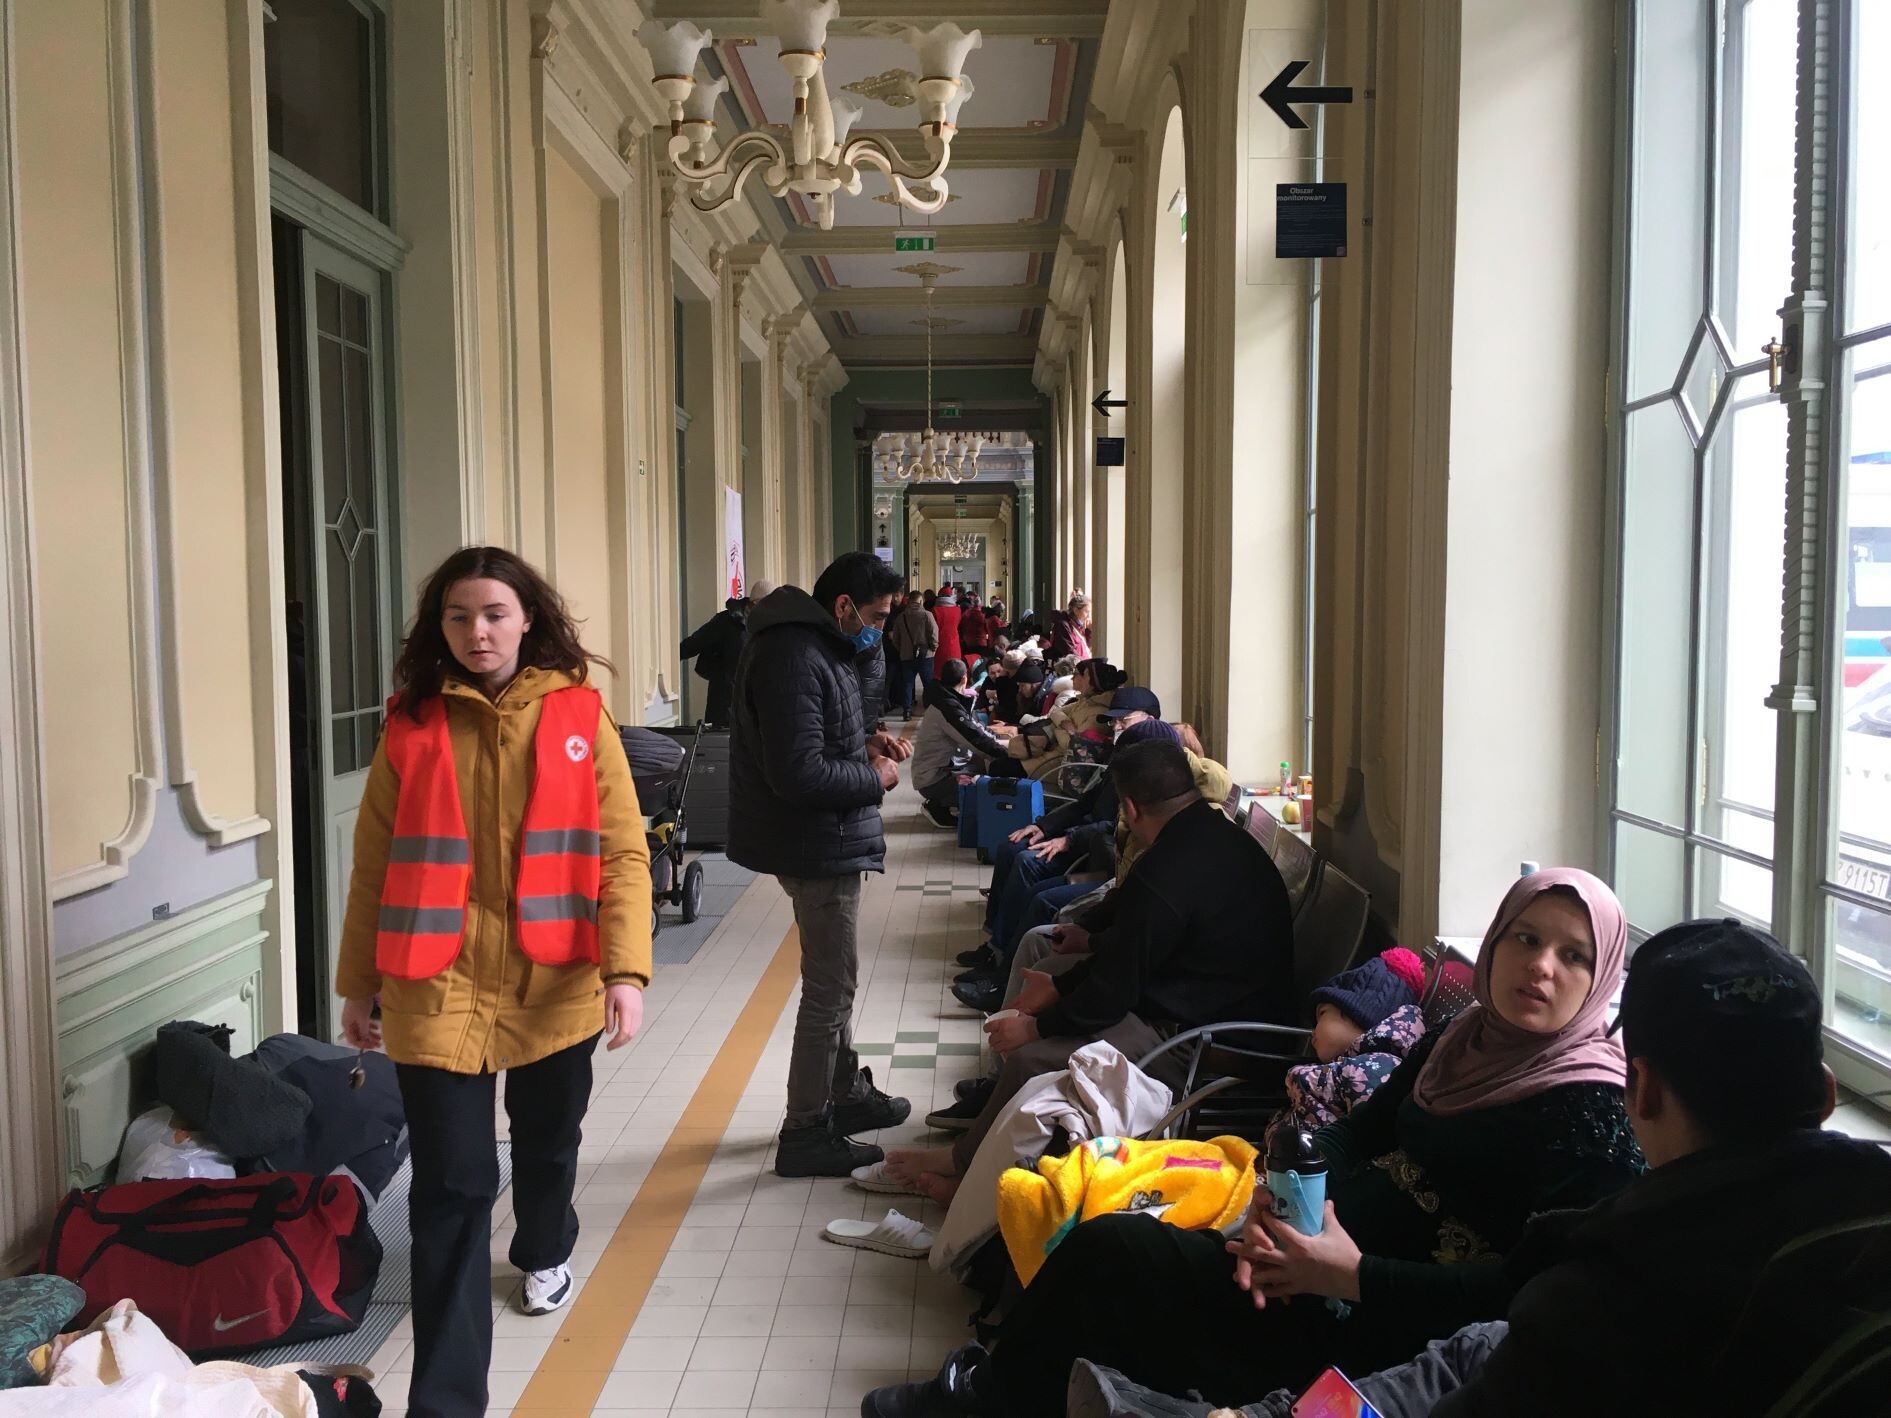 Vláda požádá o prodloužení nouzového stavu. V Česku je kolem 270 tisíc uprchlíků